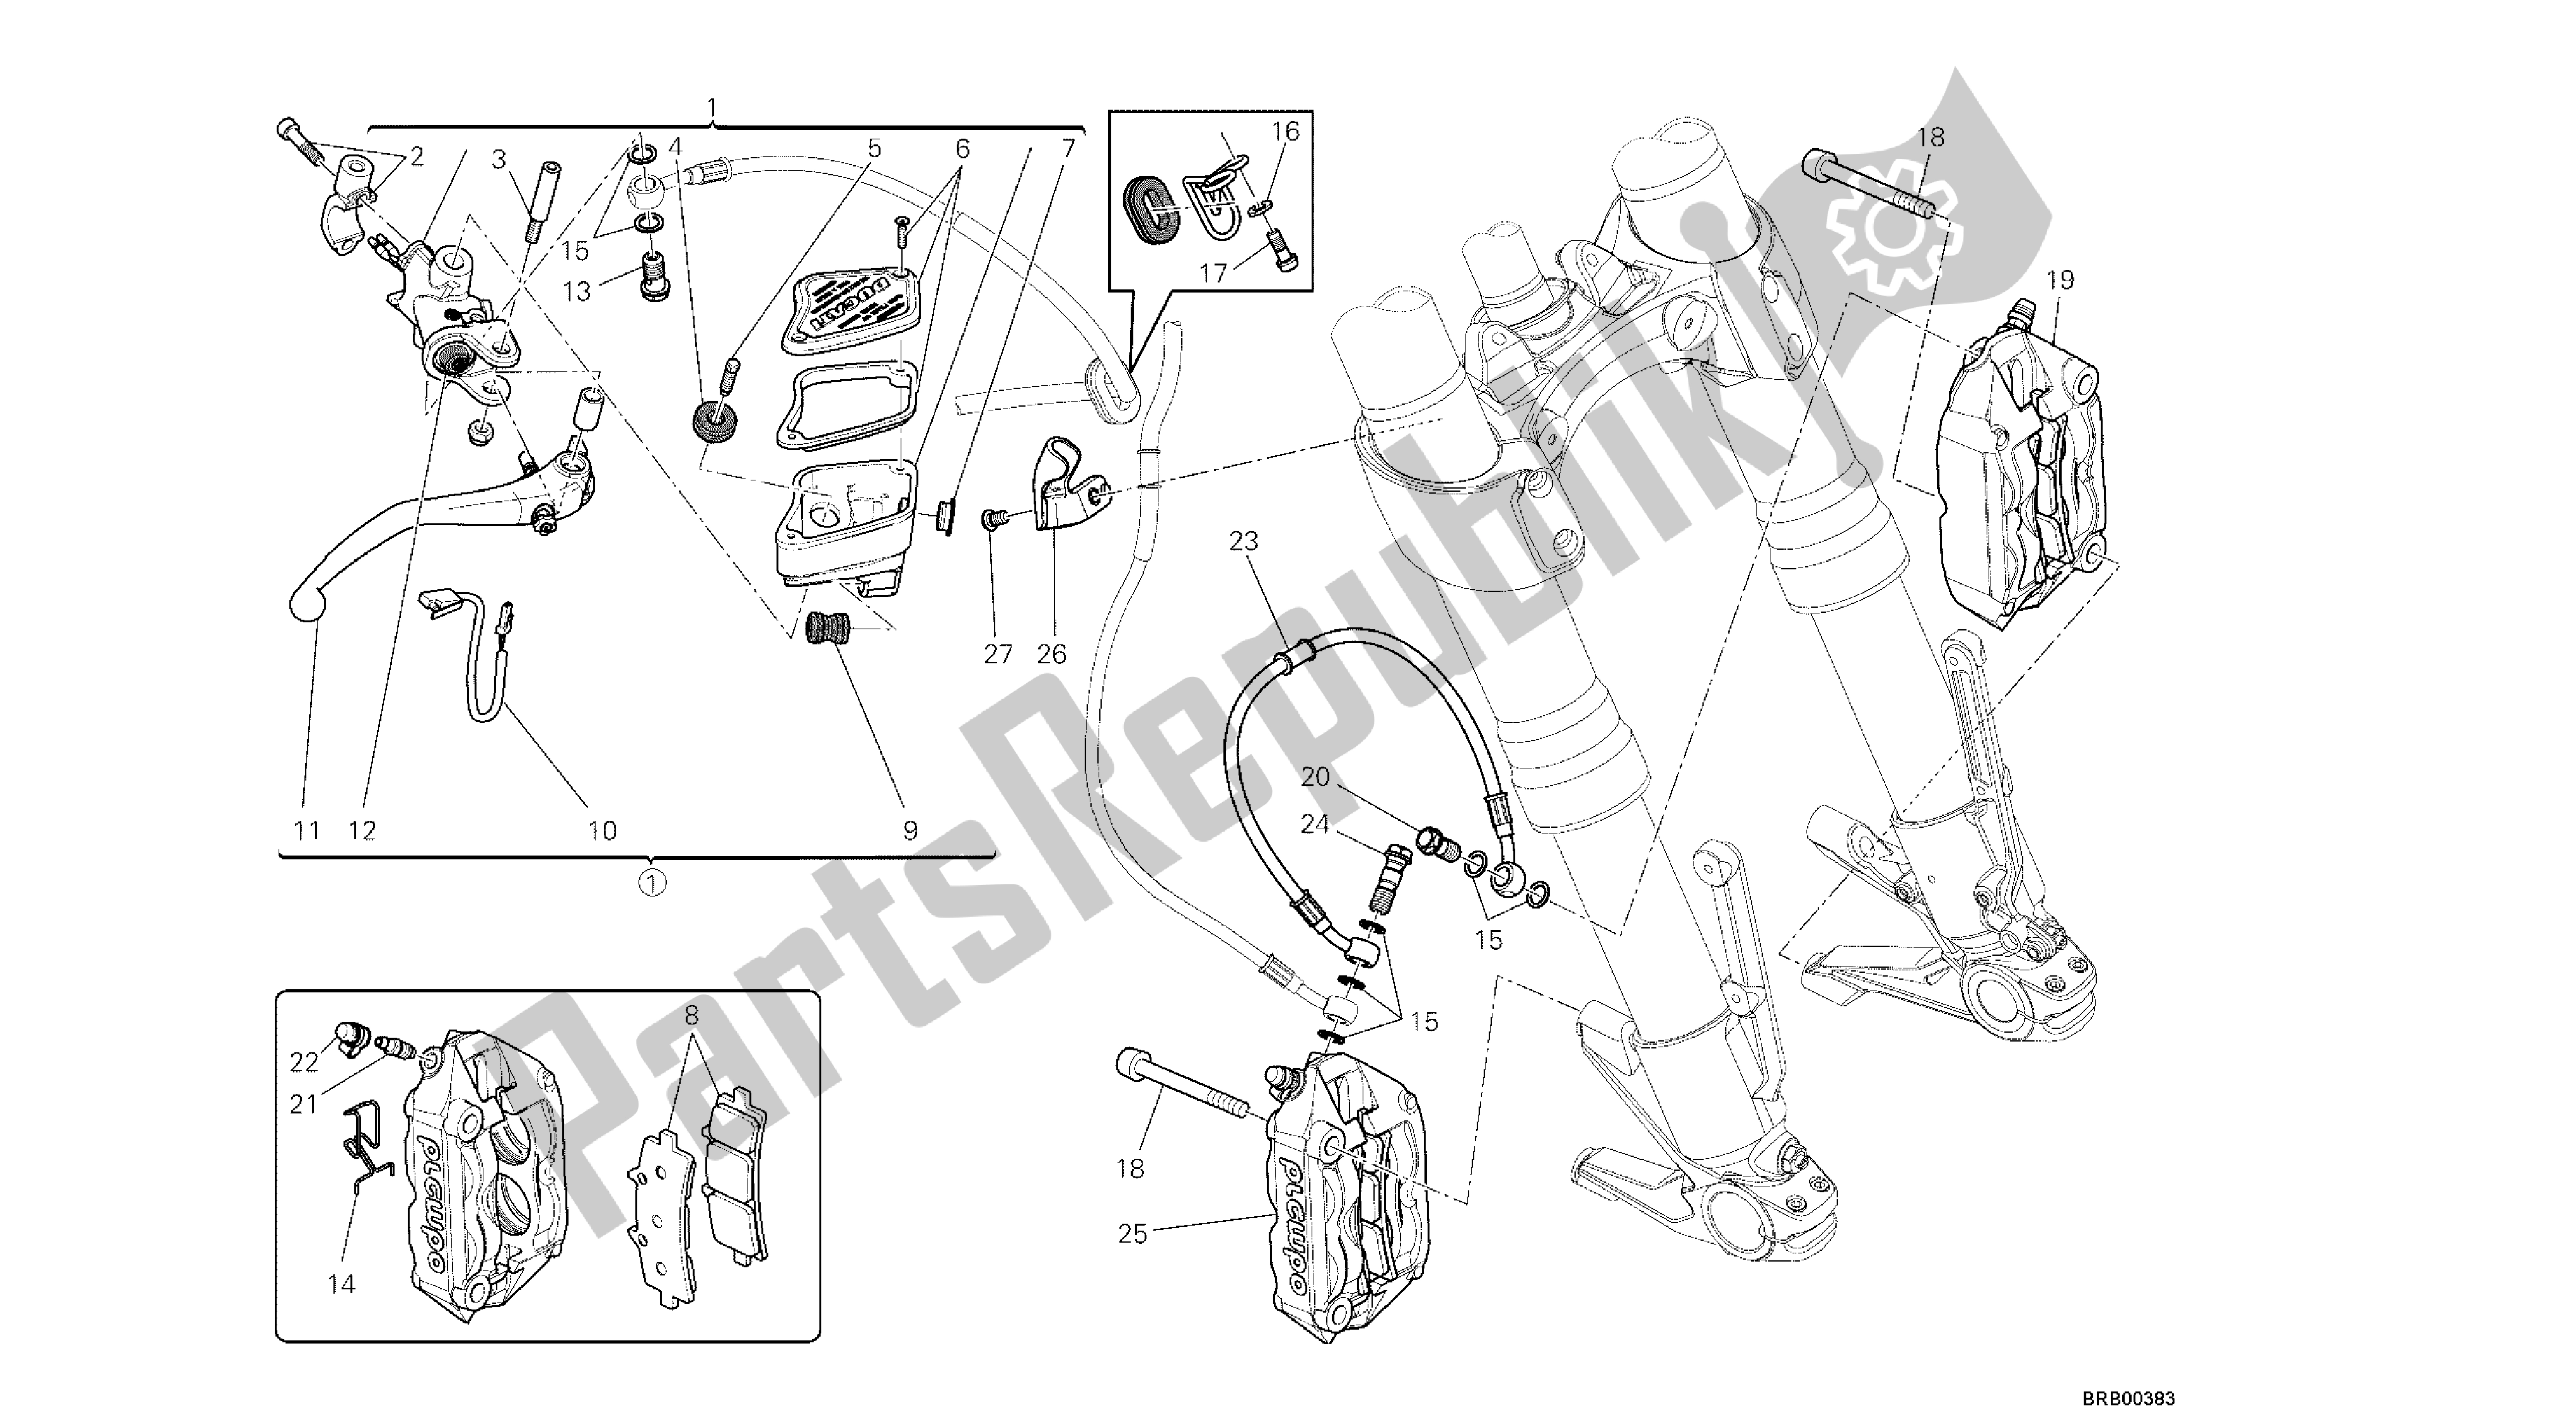 Alle onderdelen voor de Tekening 024 - Voorremsysteem [mod: Dvl; Xs T: A Us, Bra, Ch N, E Ur, F Ra, Jap, Th Ai] Group Fr Ame van de Ducati Diavel 1200 2013